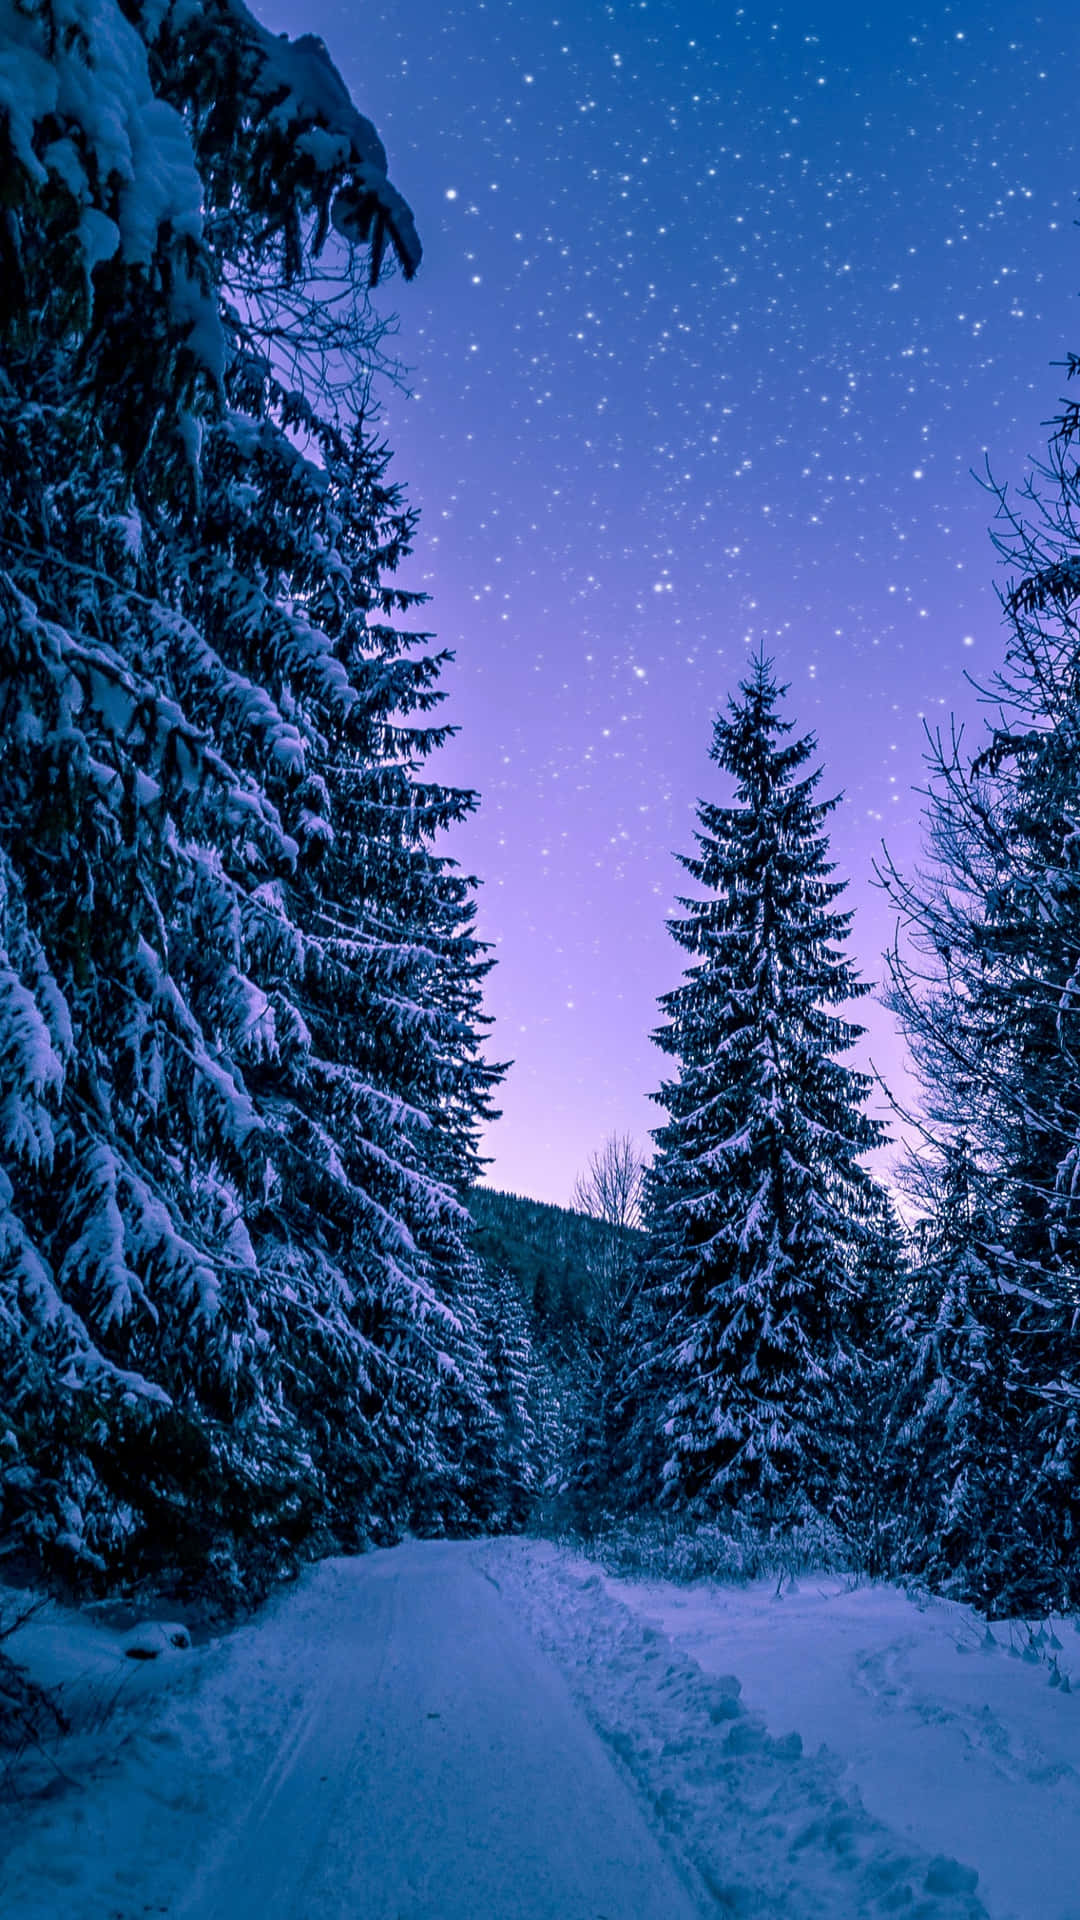 Caption: Majestic Winter Landscape On A Snowy Road Wallpaper